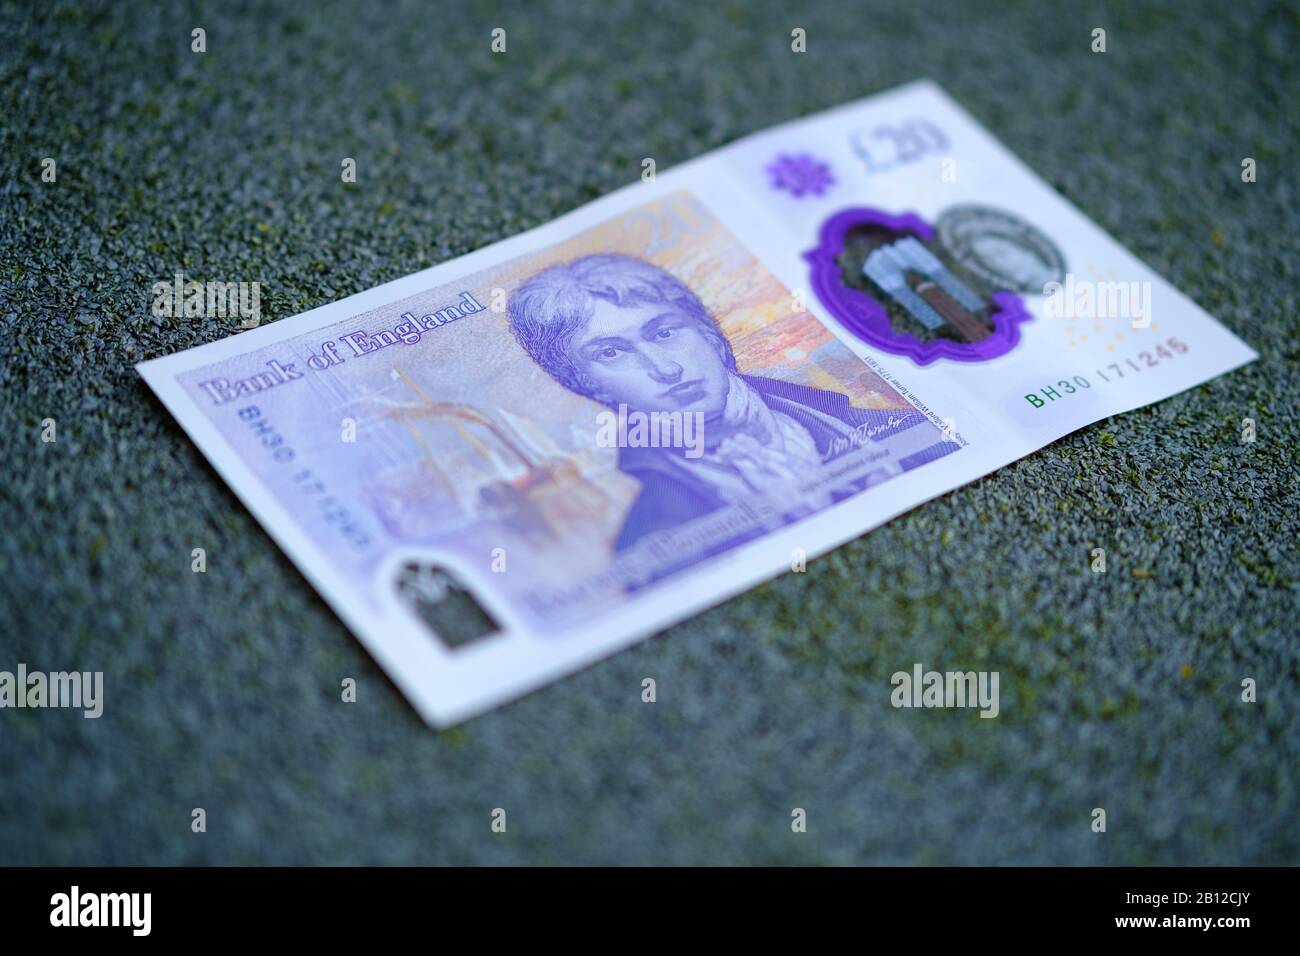 Neue britische 20-Pfund-Polymerbanknote, die im Februar 2020 in Großbritannien veröffentlicht wurde. Stockfoto